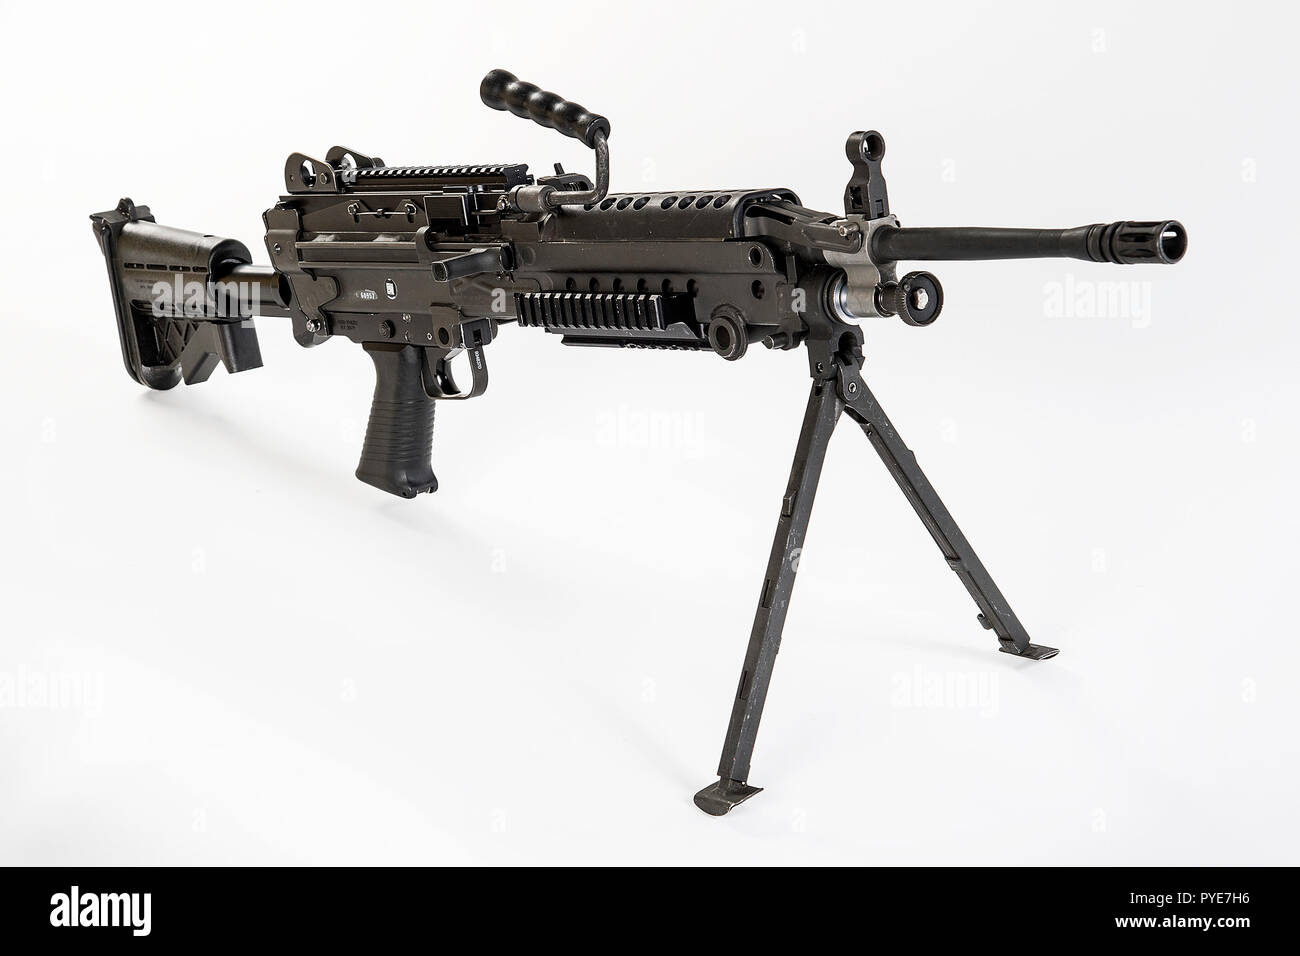 Le M249 light machine gun, auparavant désigné le M249 Squad arme automatique (VU) et officiellement écrit comme Mitrailleuse légère, 5,56 mm, M249, est l'adaptation américaine de la Minimi FN belge, une mitrailleuse légère fabriqués par l'entreprise belge FN Herstal (FN). L'arme a été introduit en 1984 après avoir été jugé le plus efficace des armes un certain nombre de candidats pour combler le manque de puissance de feu automatique en petites unités. Le M249 fournit des escouades d'infanterie avec le taux élevé de feu d'une mitrailleuse combiné avec exactitude et la portabilité qui se rapproche de celui d'un fusil. Le M249 est le gaz o Banque D'Images